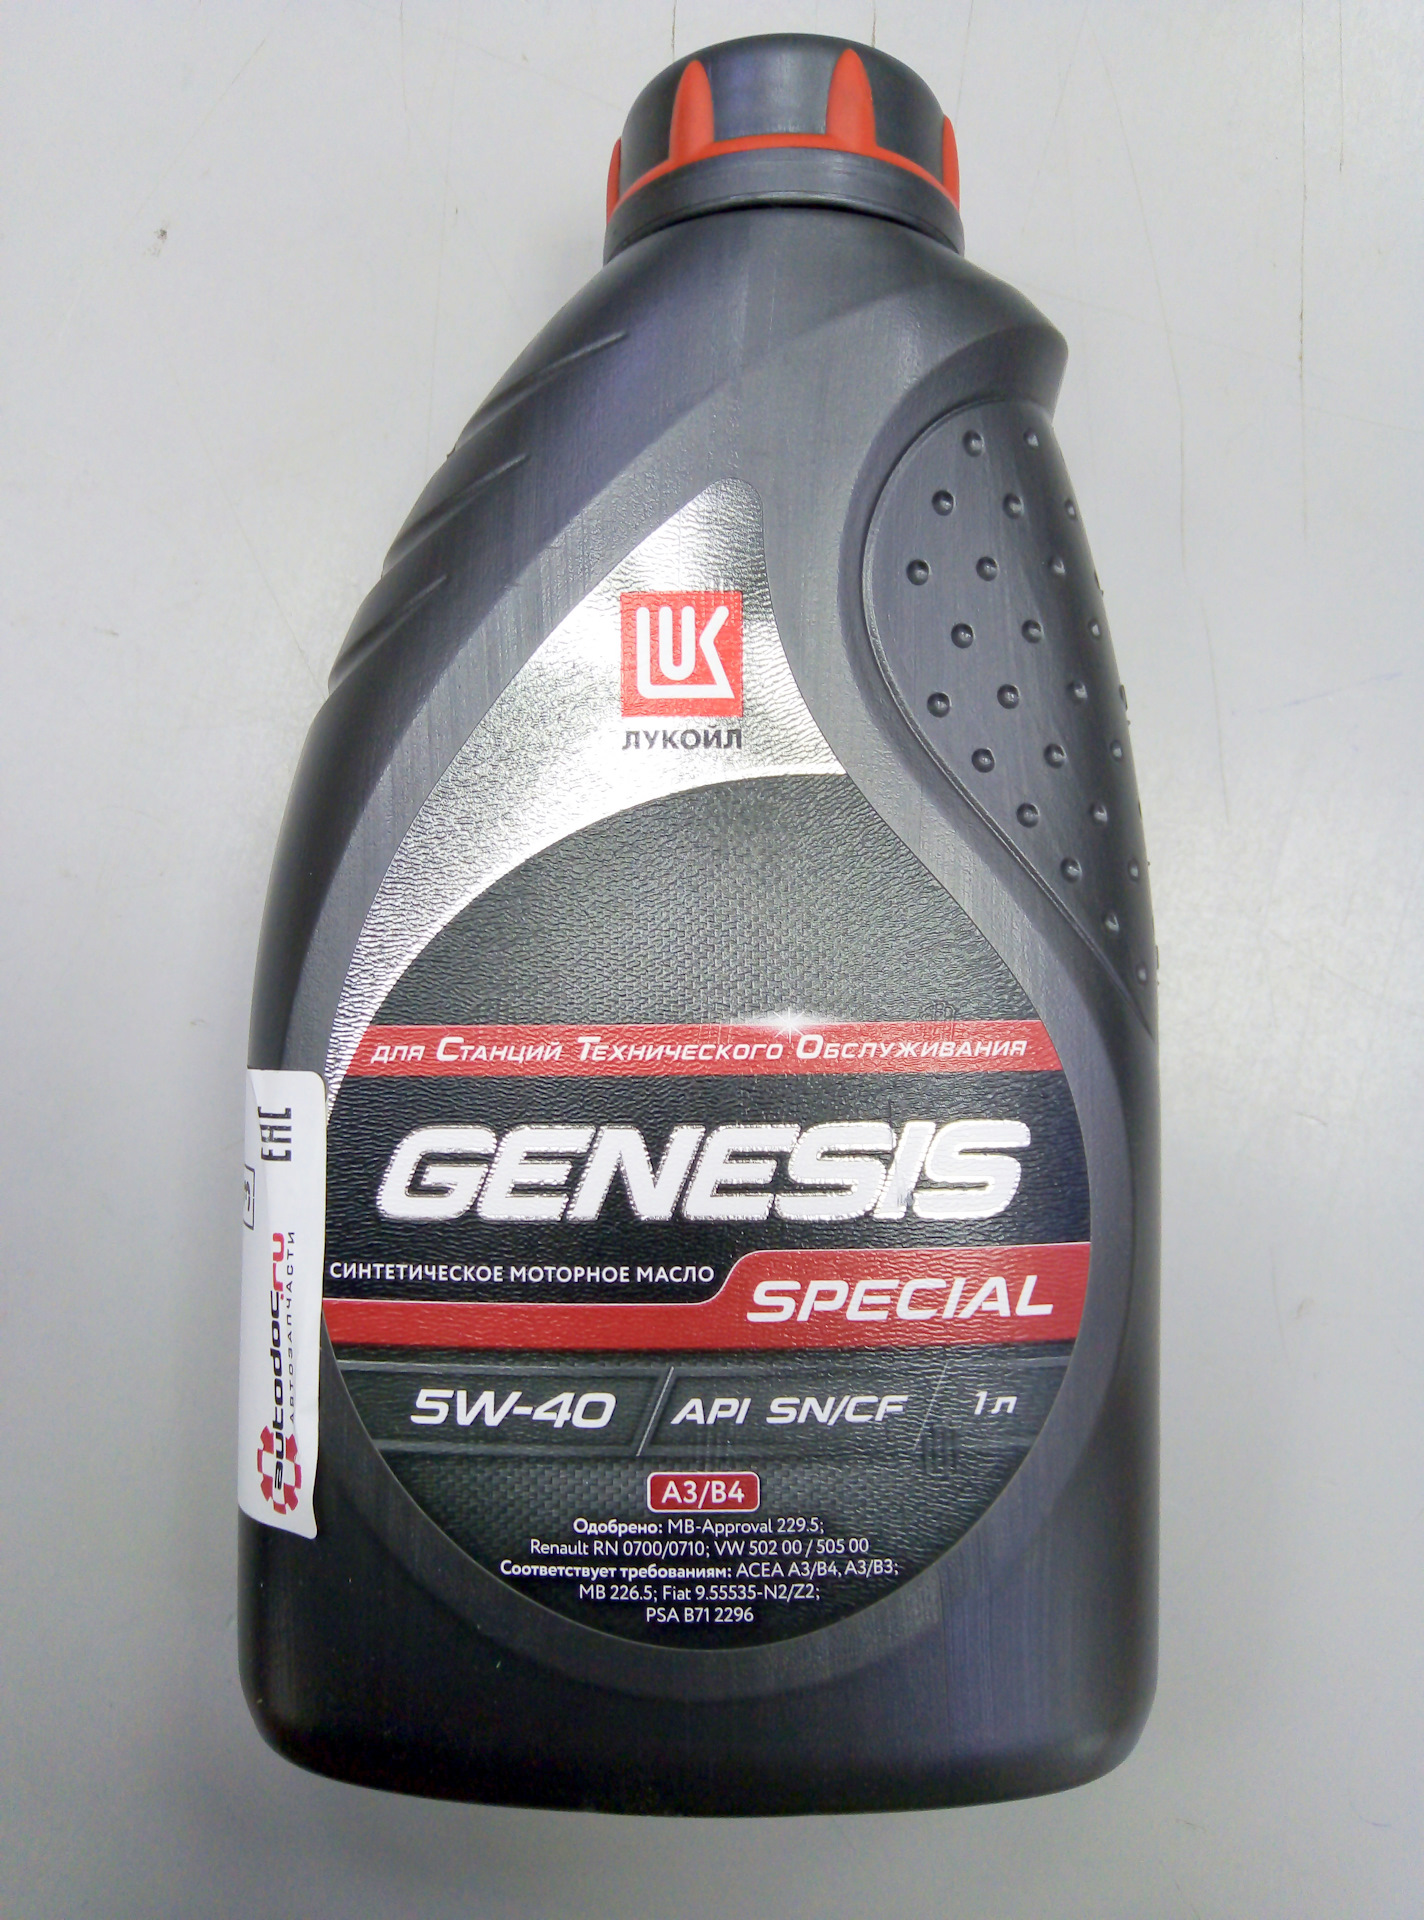 Lukoil genesis special